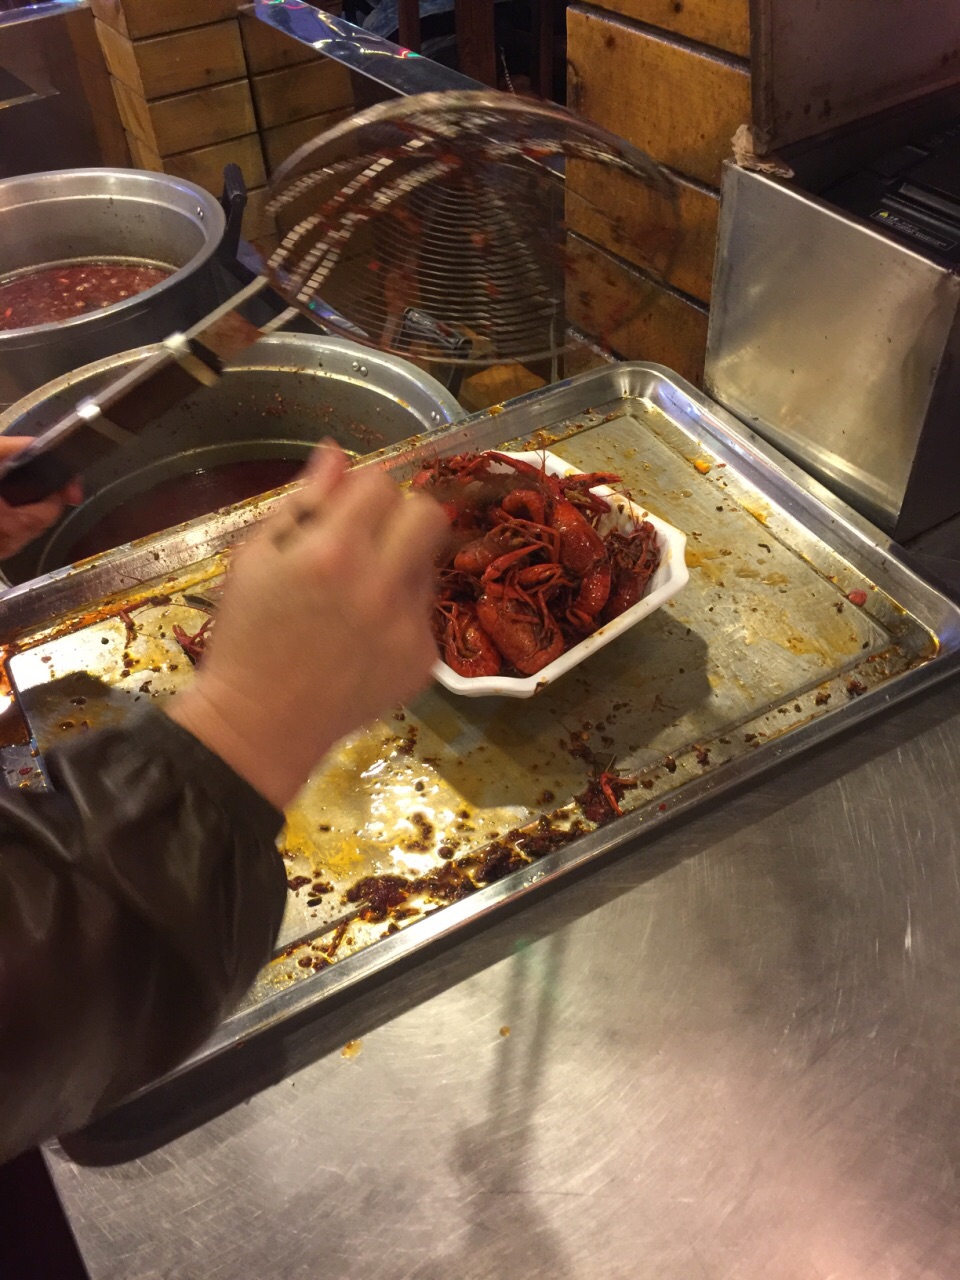 【携程美食林】合肥阿胖特色龙虾(罍街店)餐馆,这里是经典的饮食一条